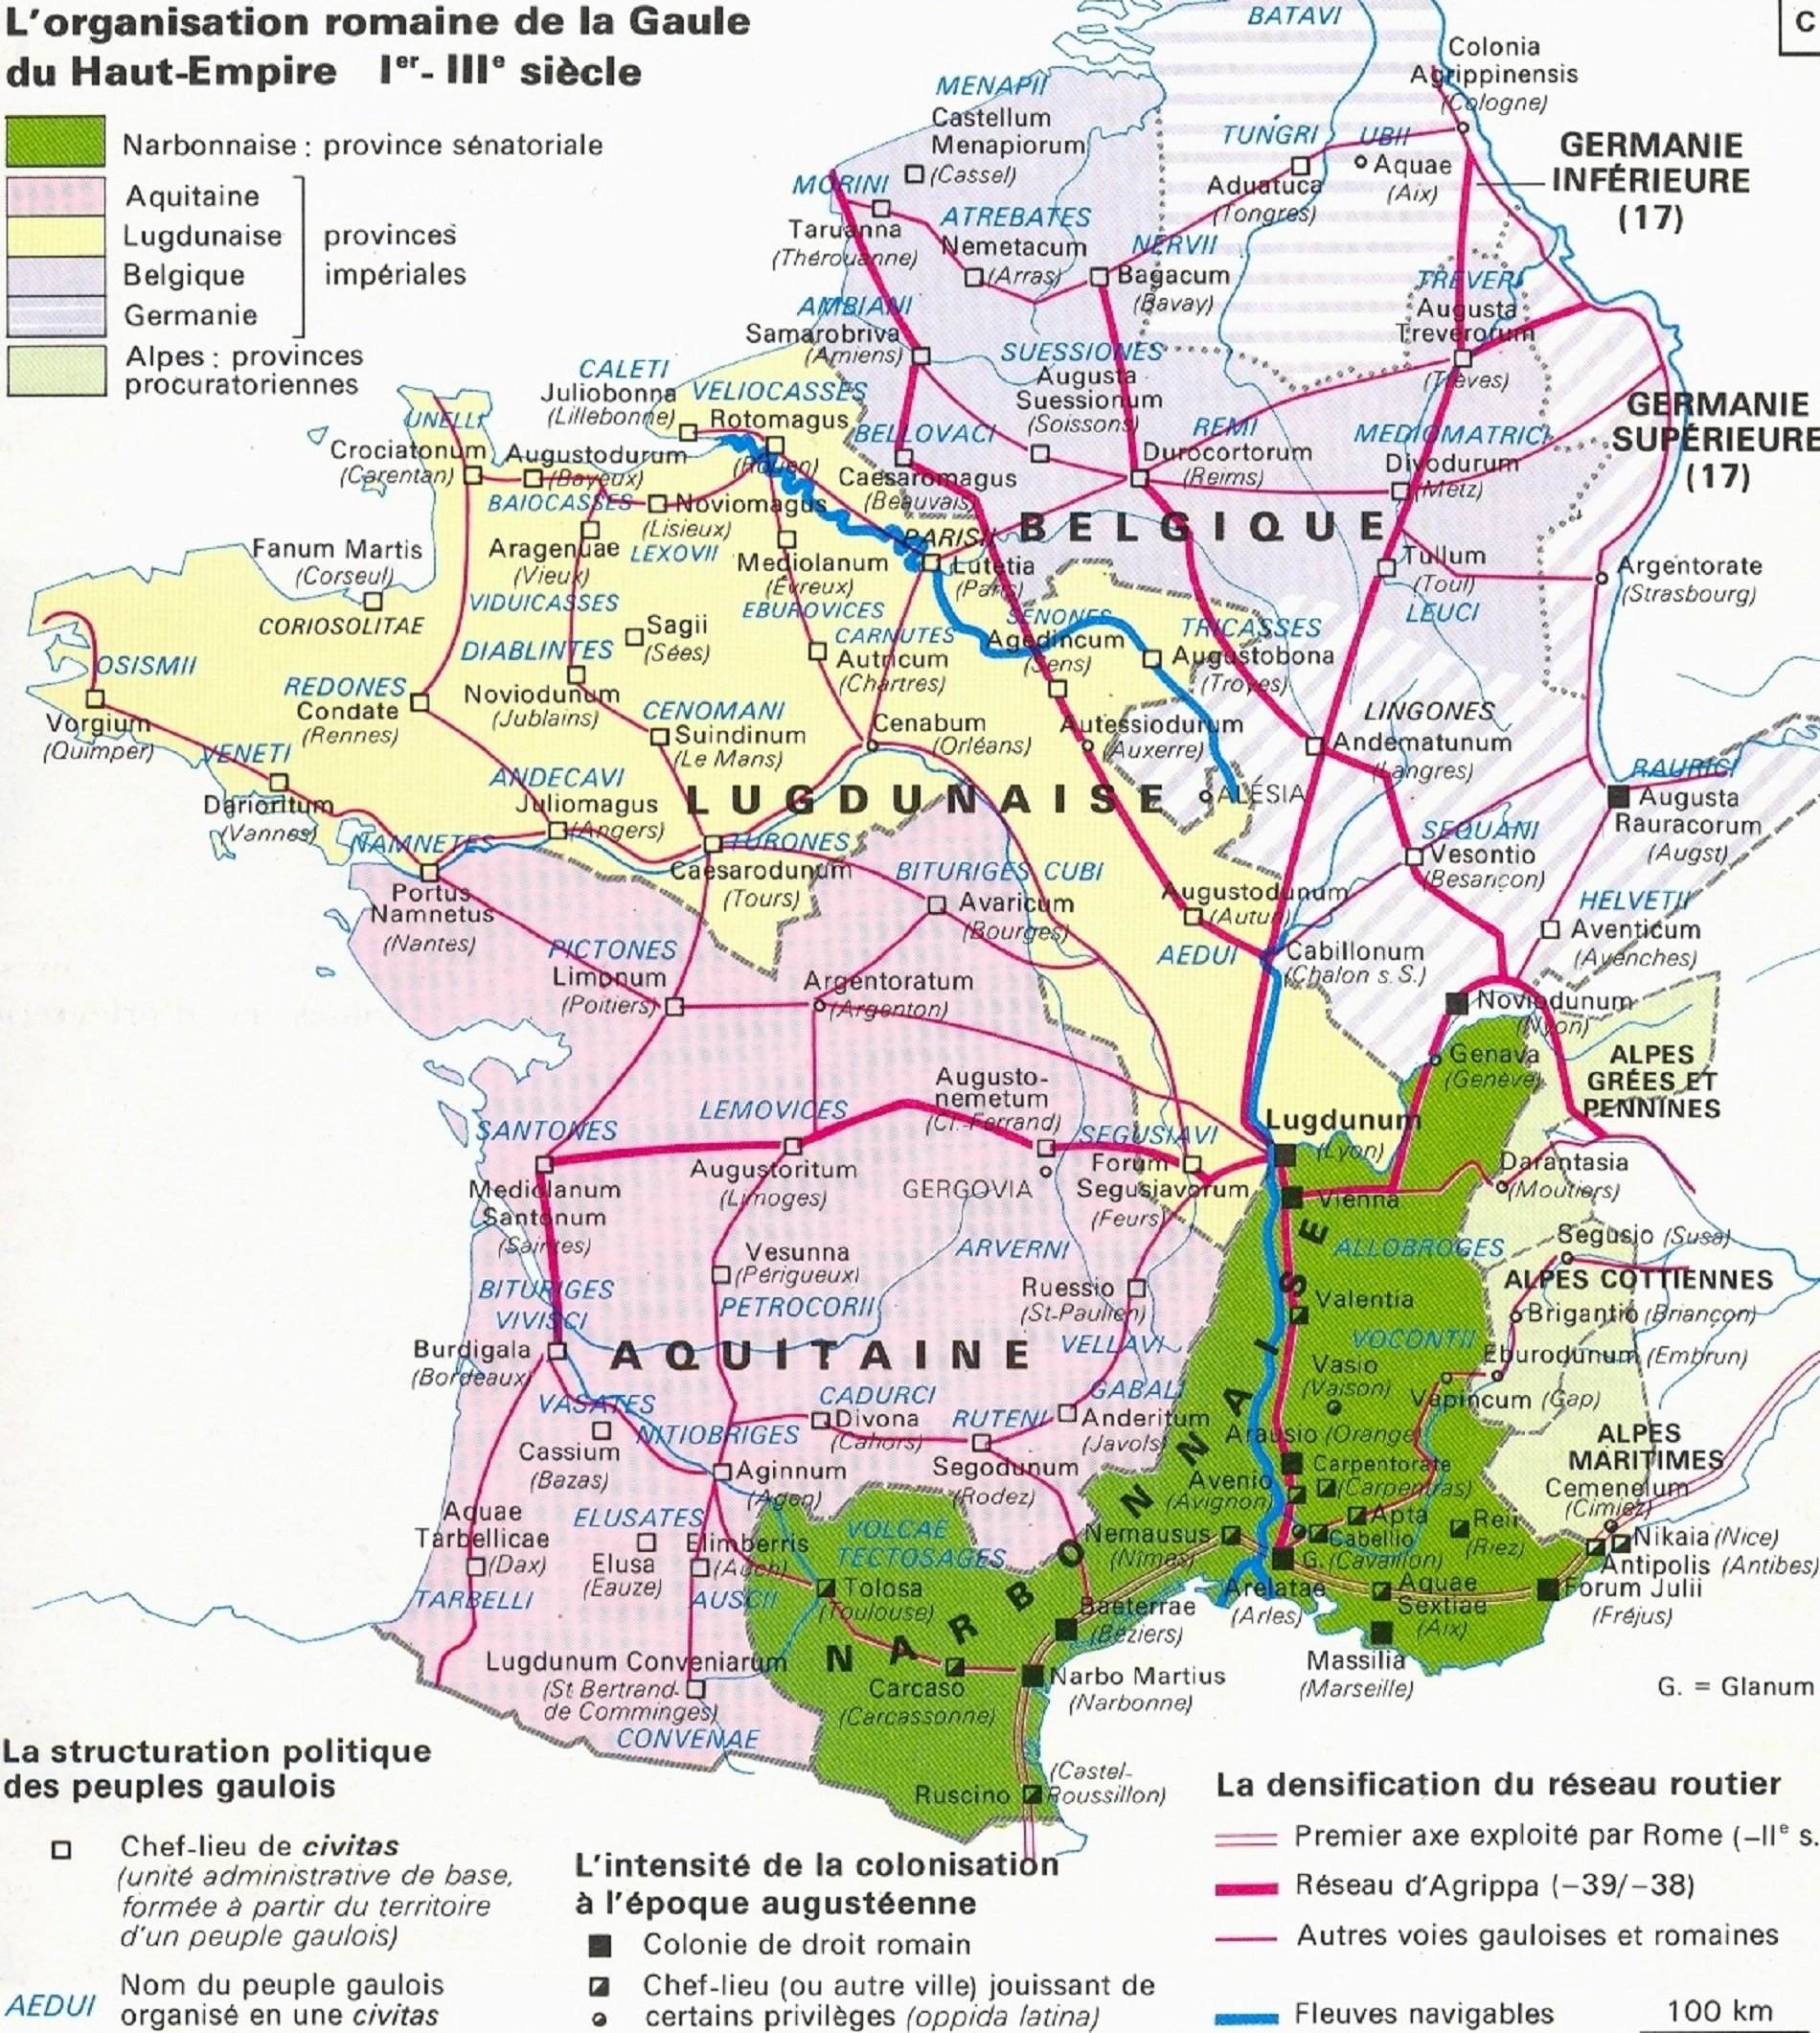 Mapa contemporani de la Gàl·lia romana (segles I a III). Font Cartes Historiques de la France